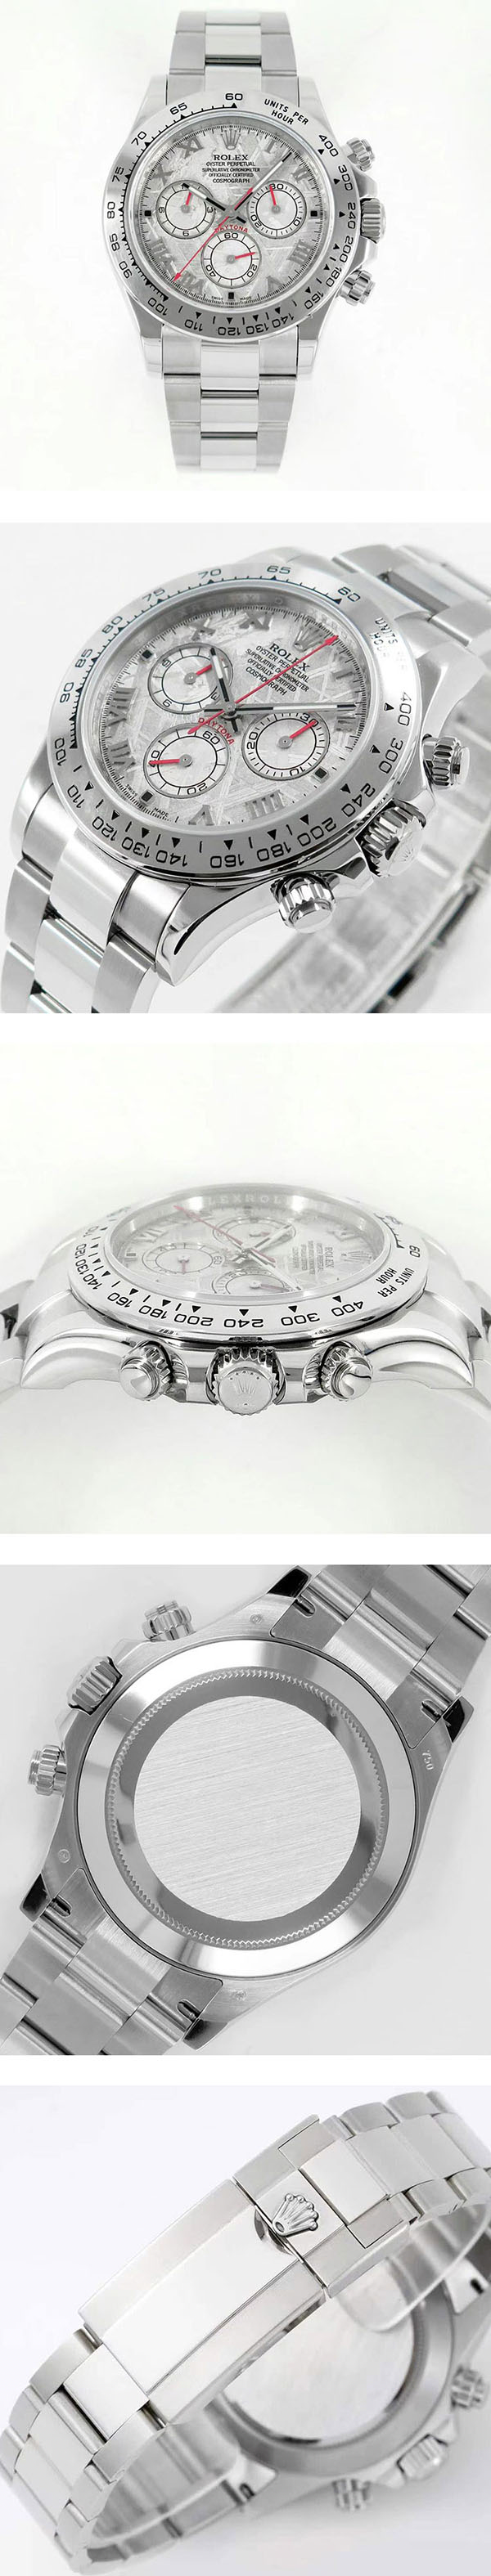 【入手困難】ロレックス デイトナ コピー時計116509-Meteorite 、日本メンズ腕時計